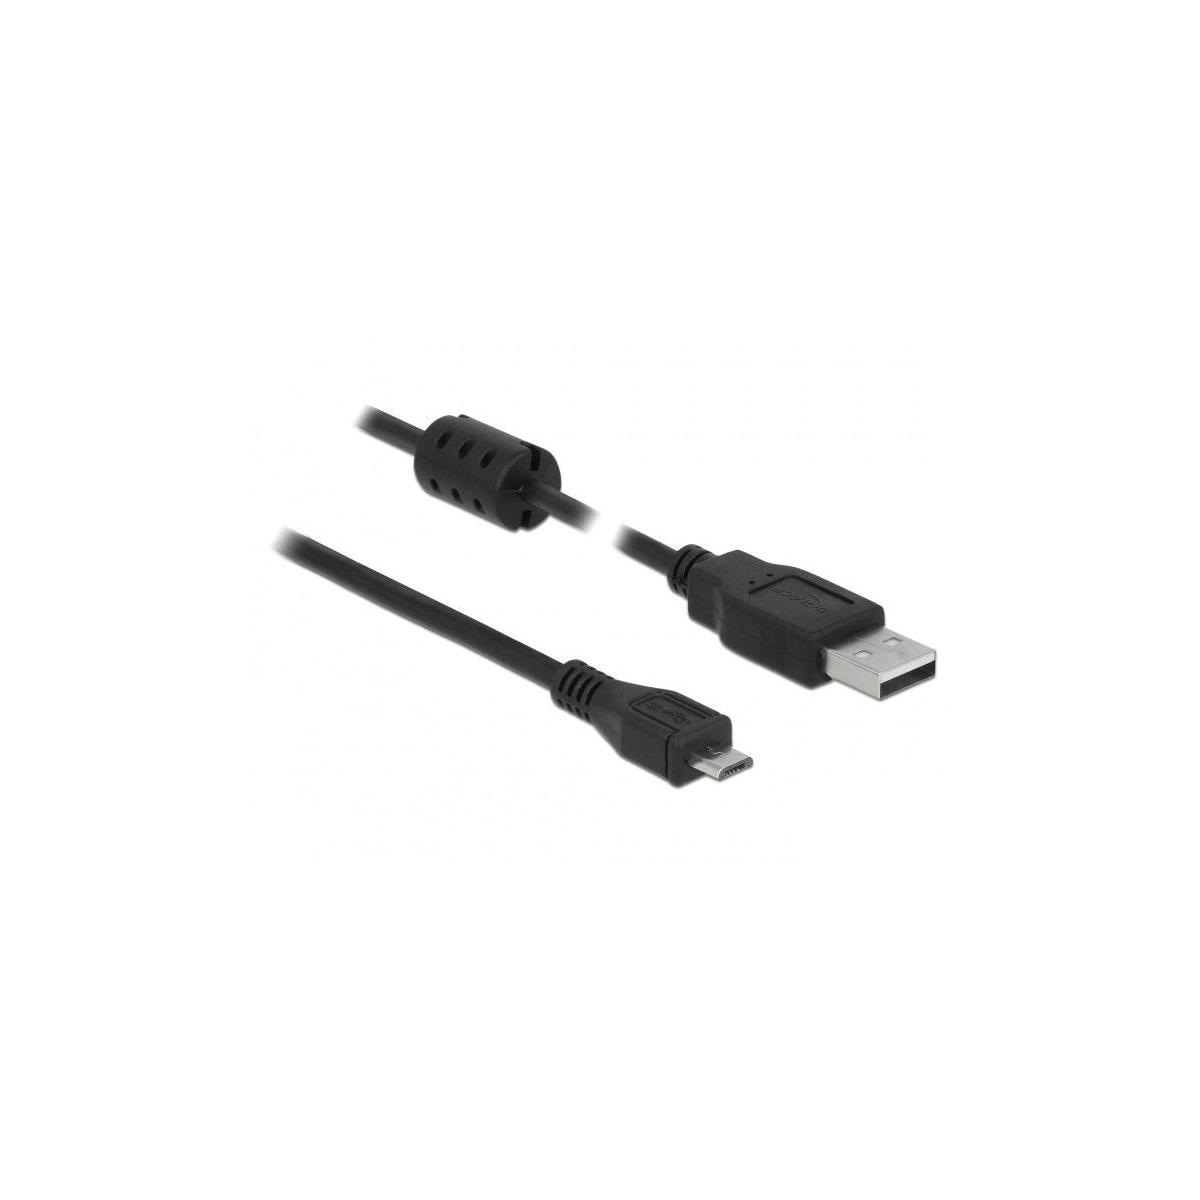 DELOCK DELOCK Kabel USB Typ-A<gt/>Micro-B 3,0 & m Kabel, Schwarz 2.0 USB Peripheriegeräte Zubehör